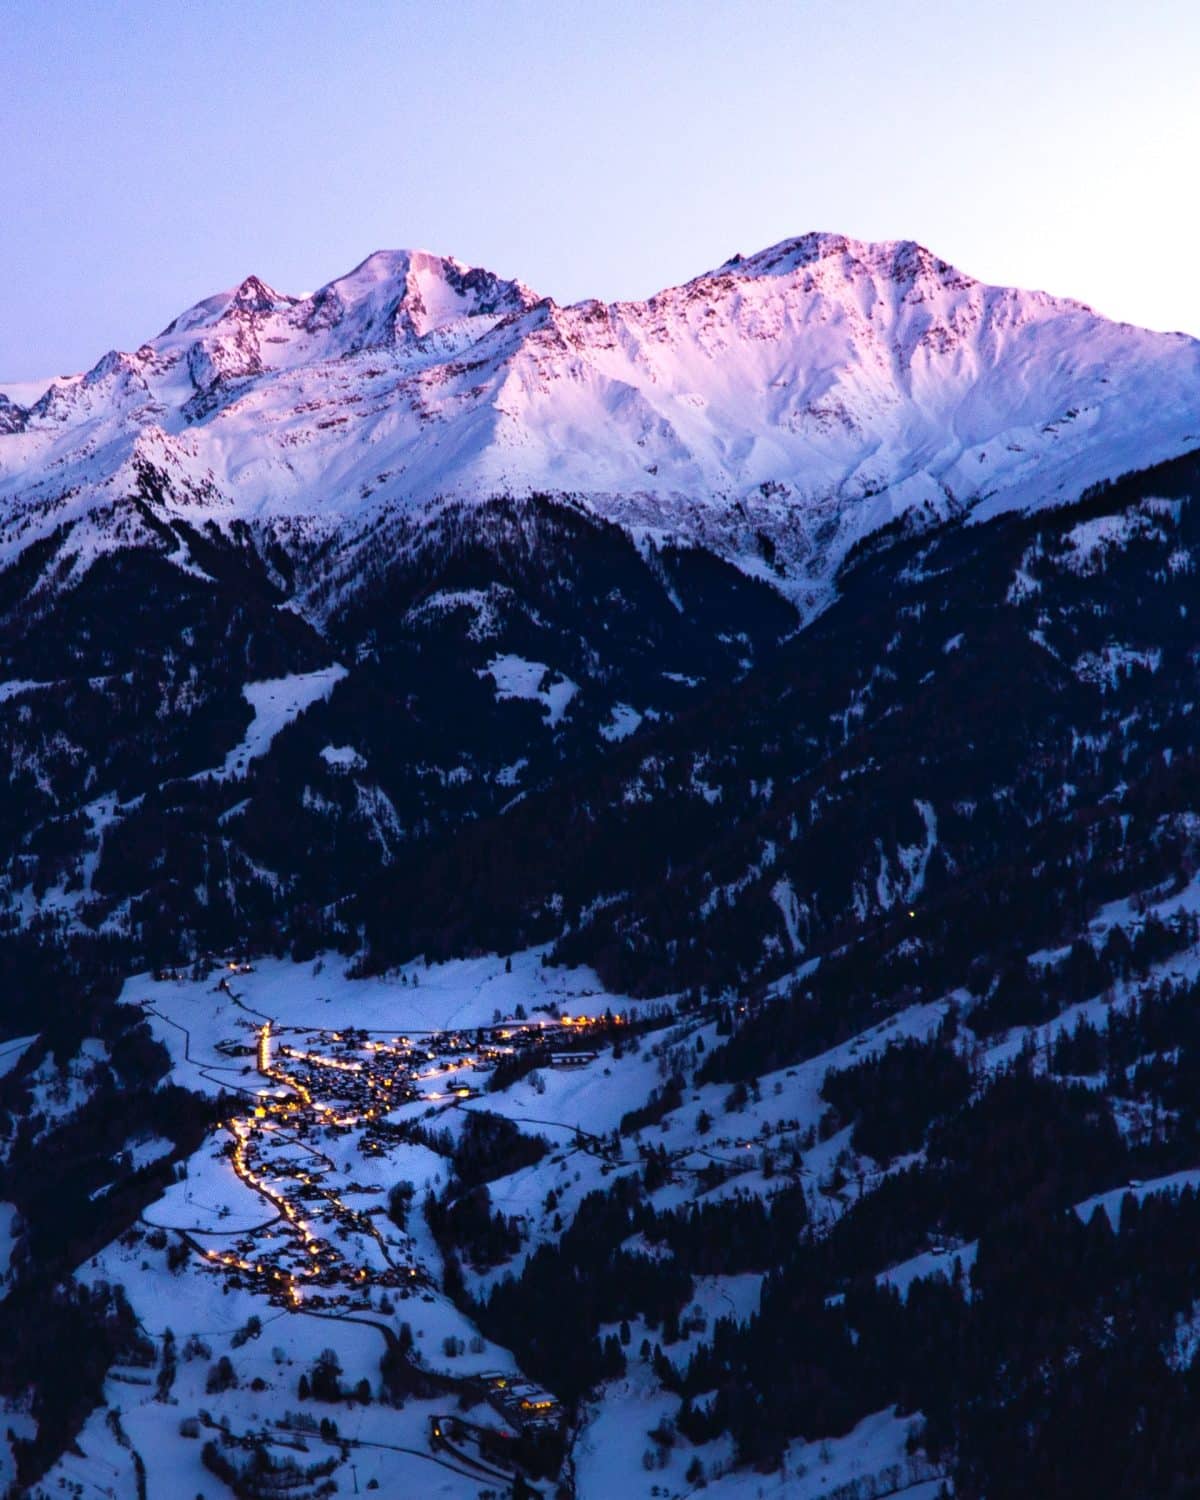 Station de ski Suisse en contrebas d'une montagne au couché du soleil